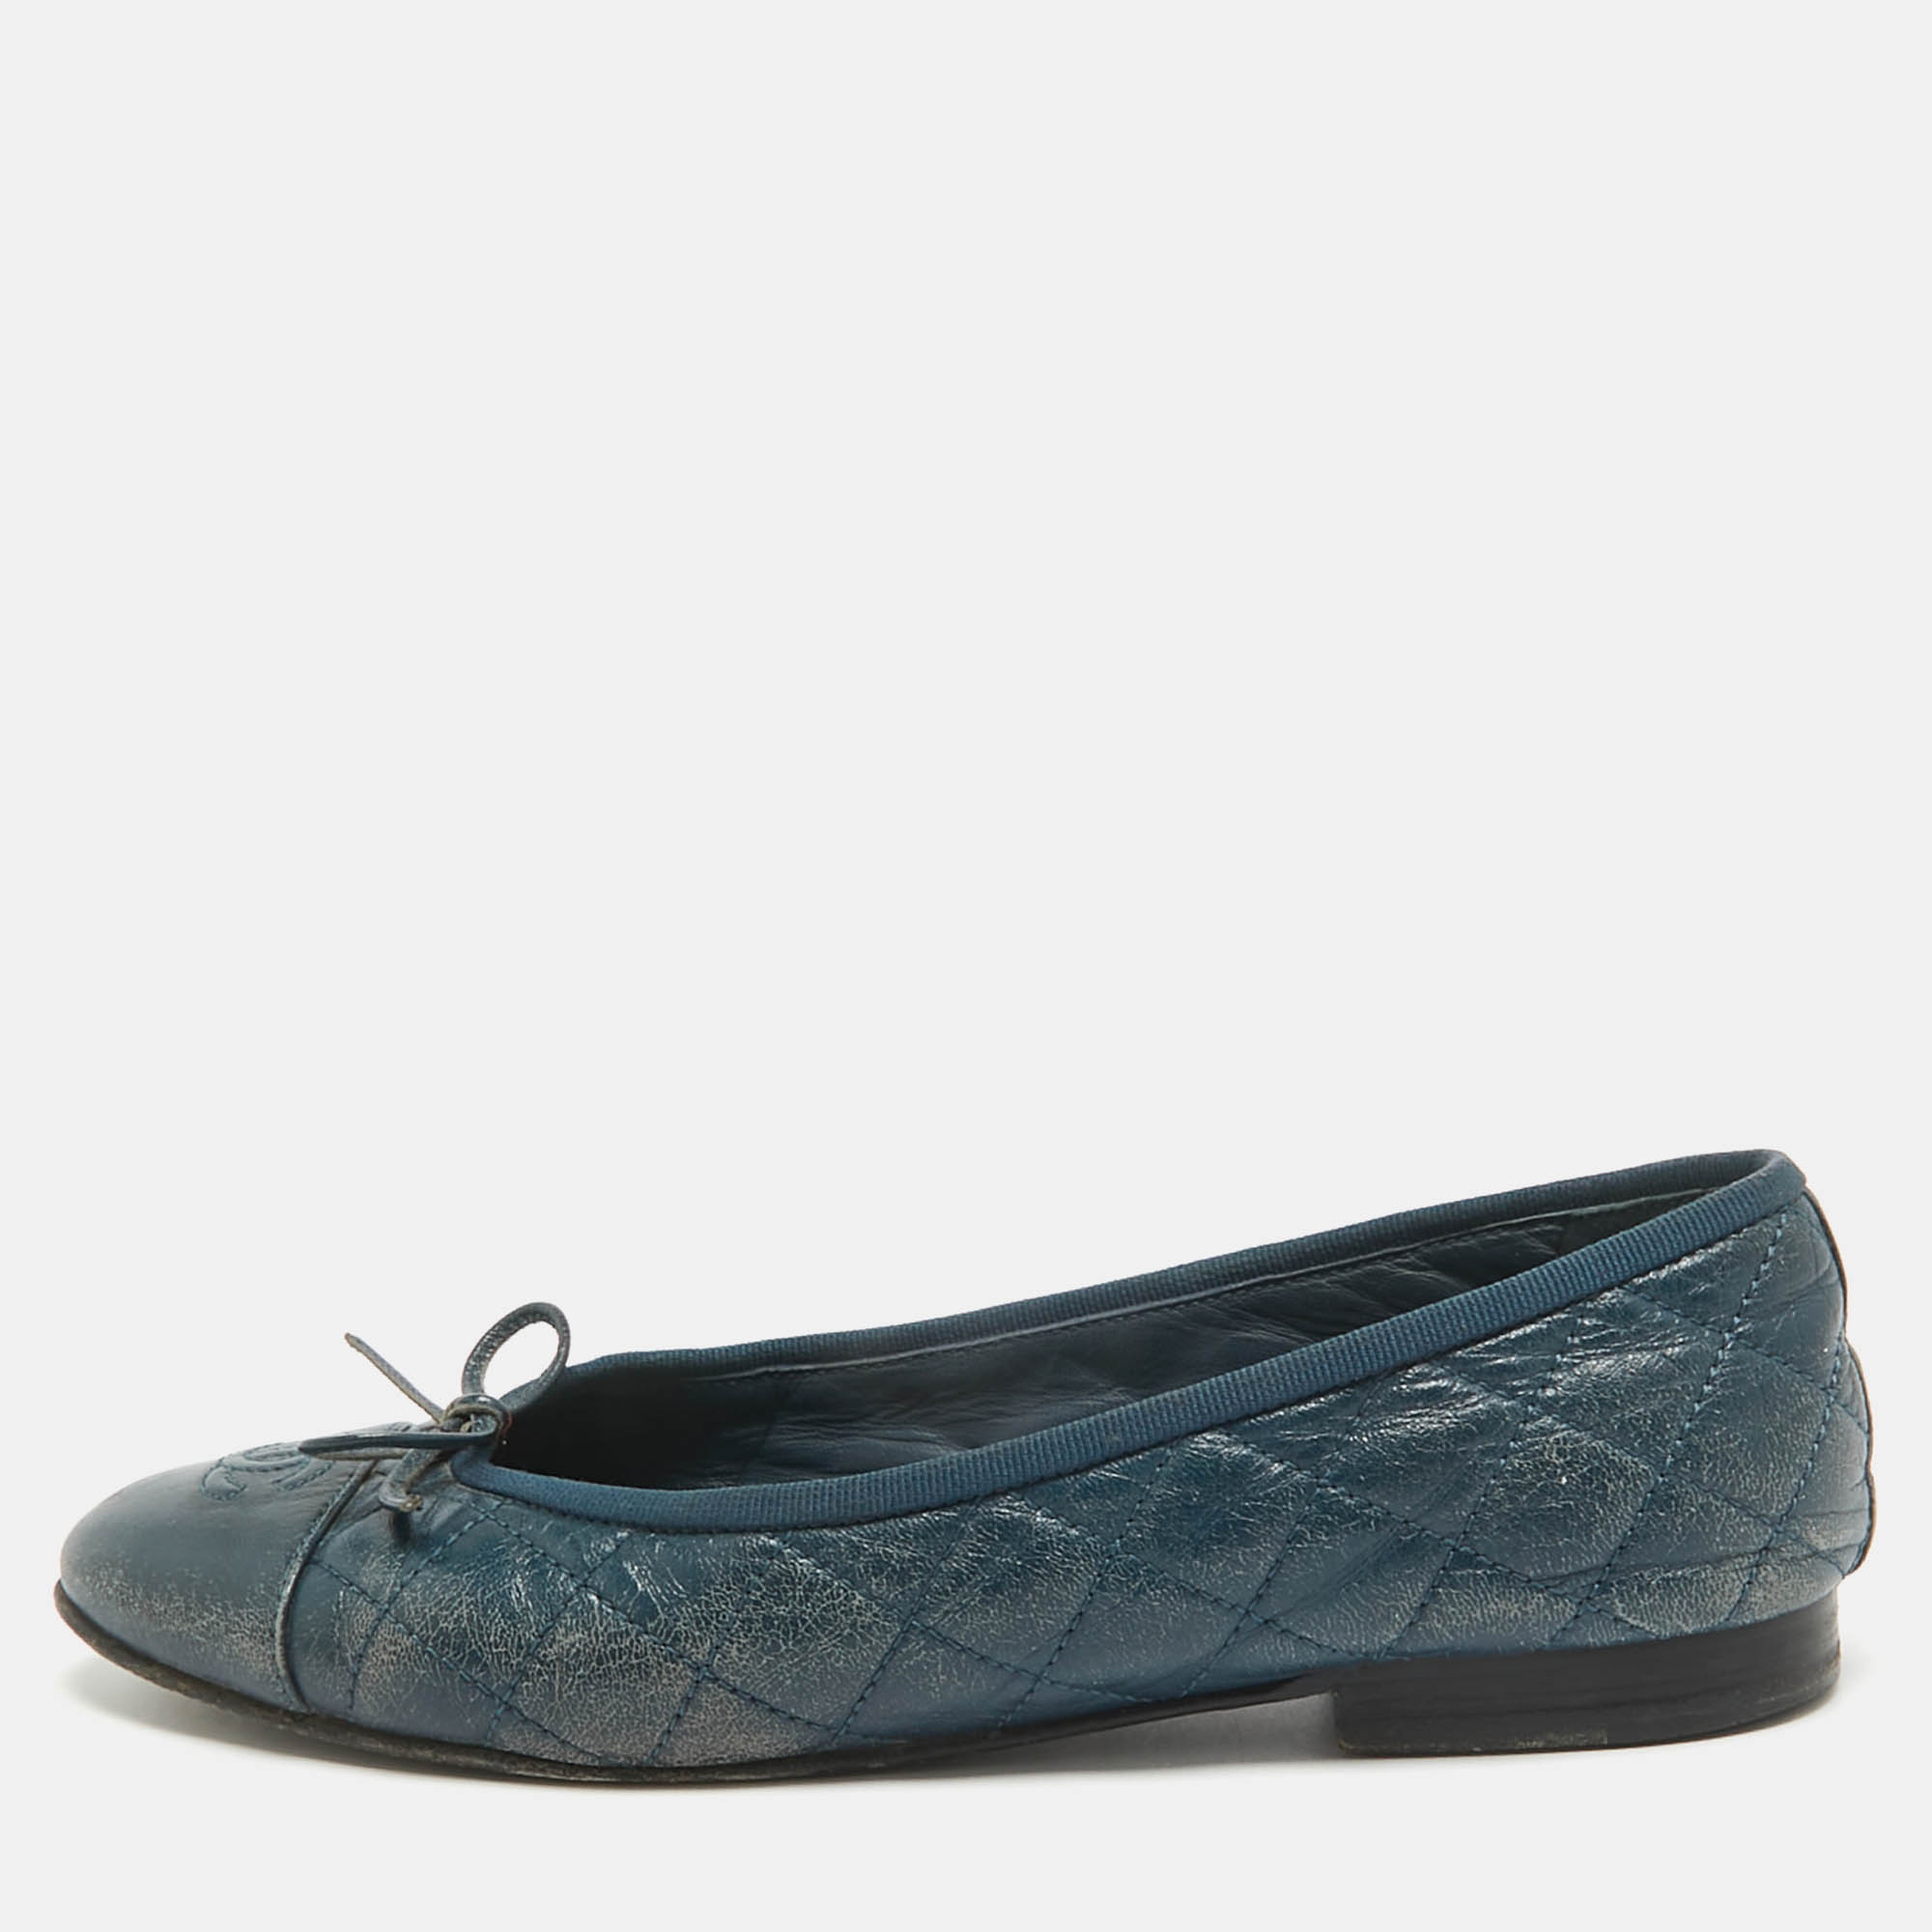 Chanel blue leather cc cap toe ballet  flats size 38.5